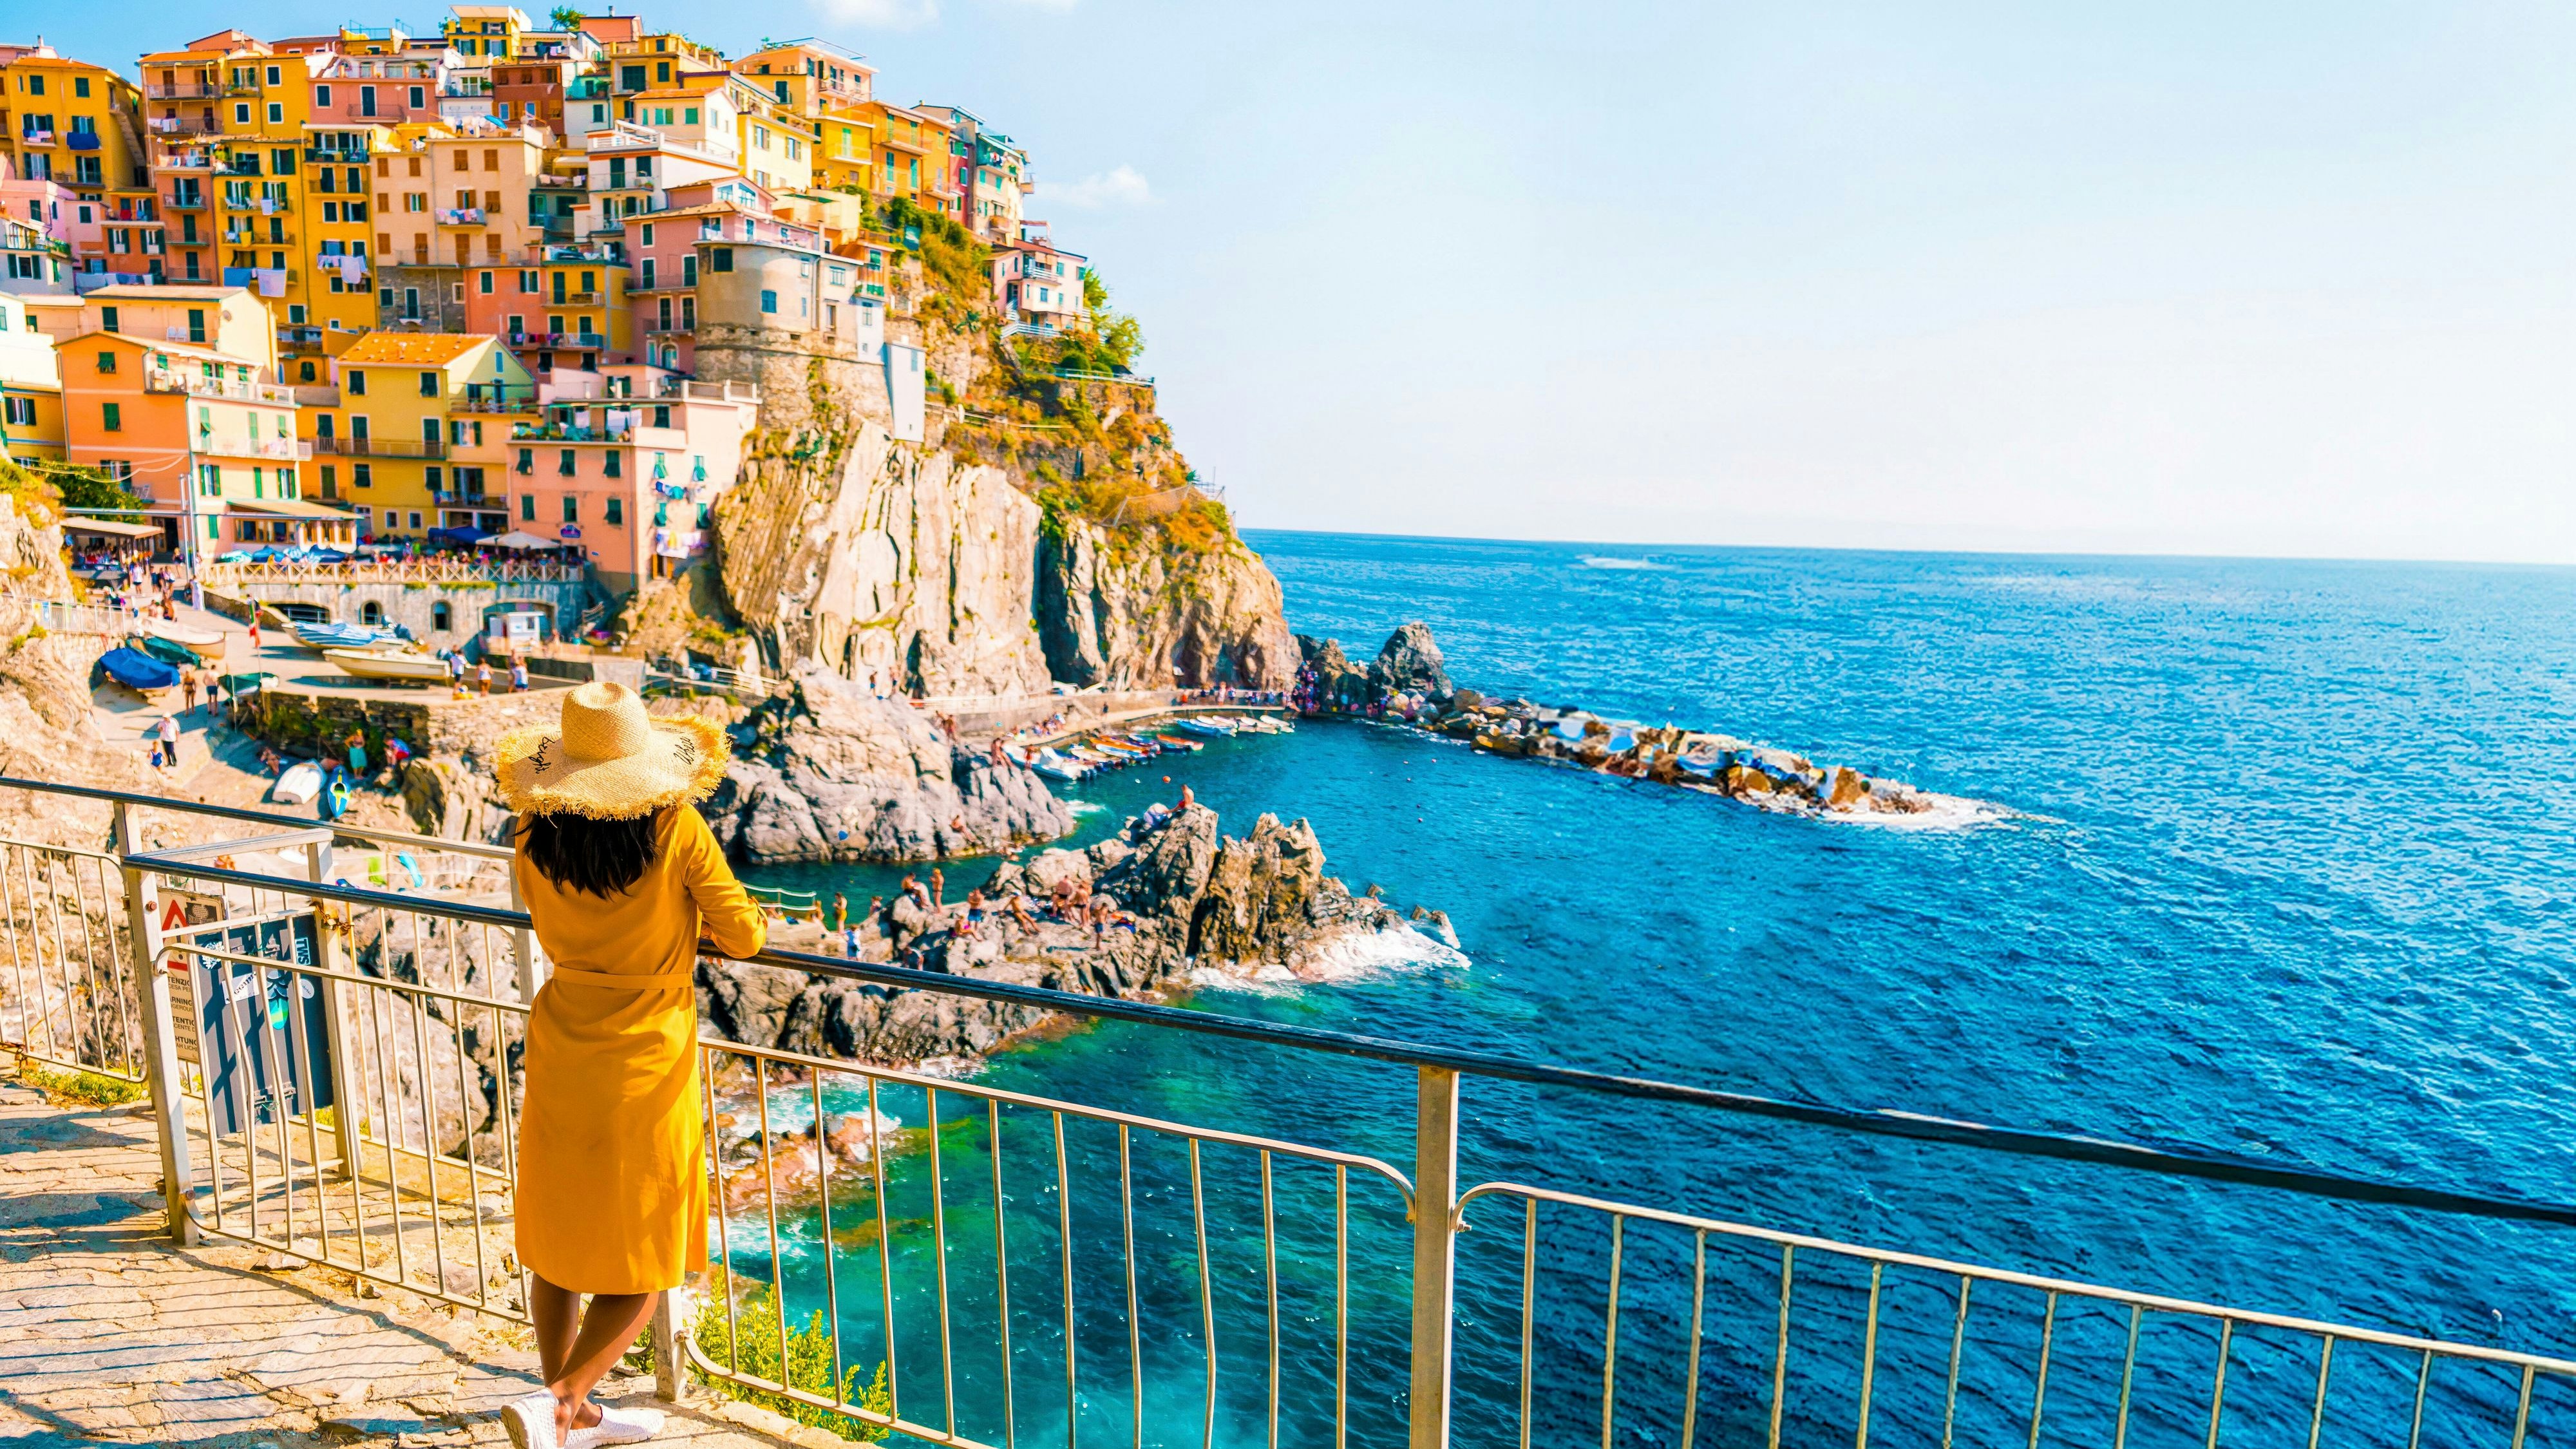 neue italien-regeln – touristen zahlen das doppelte